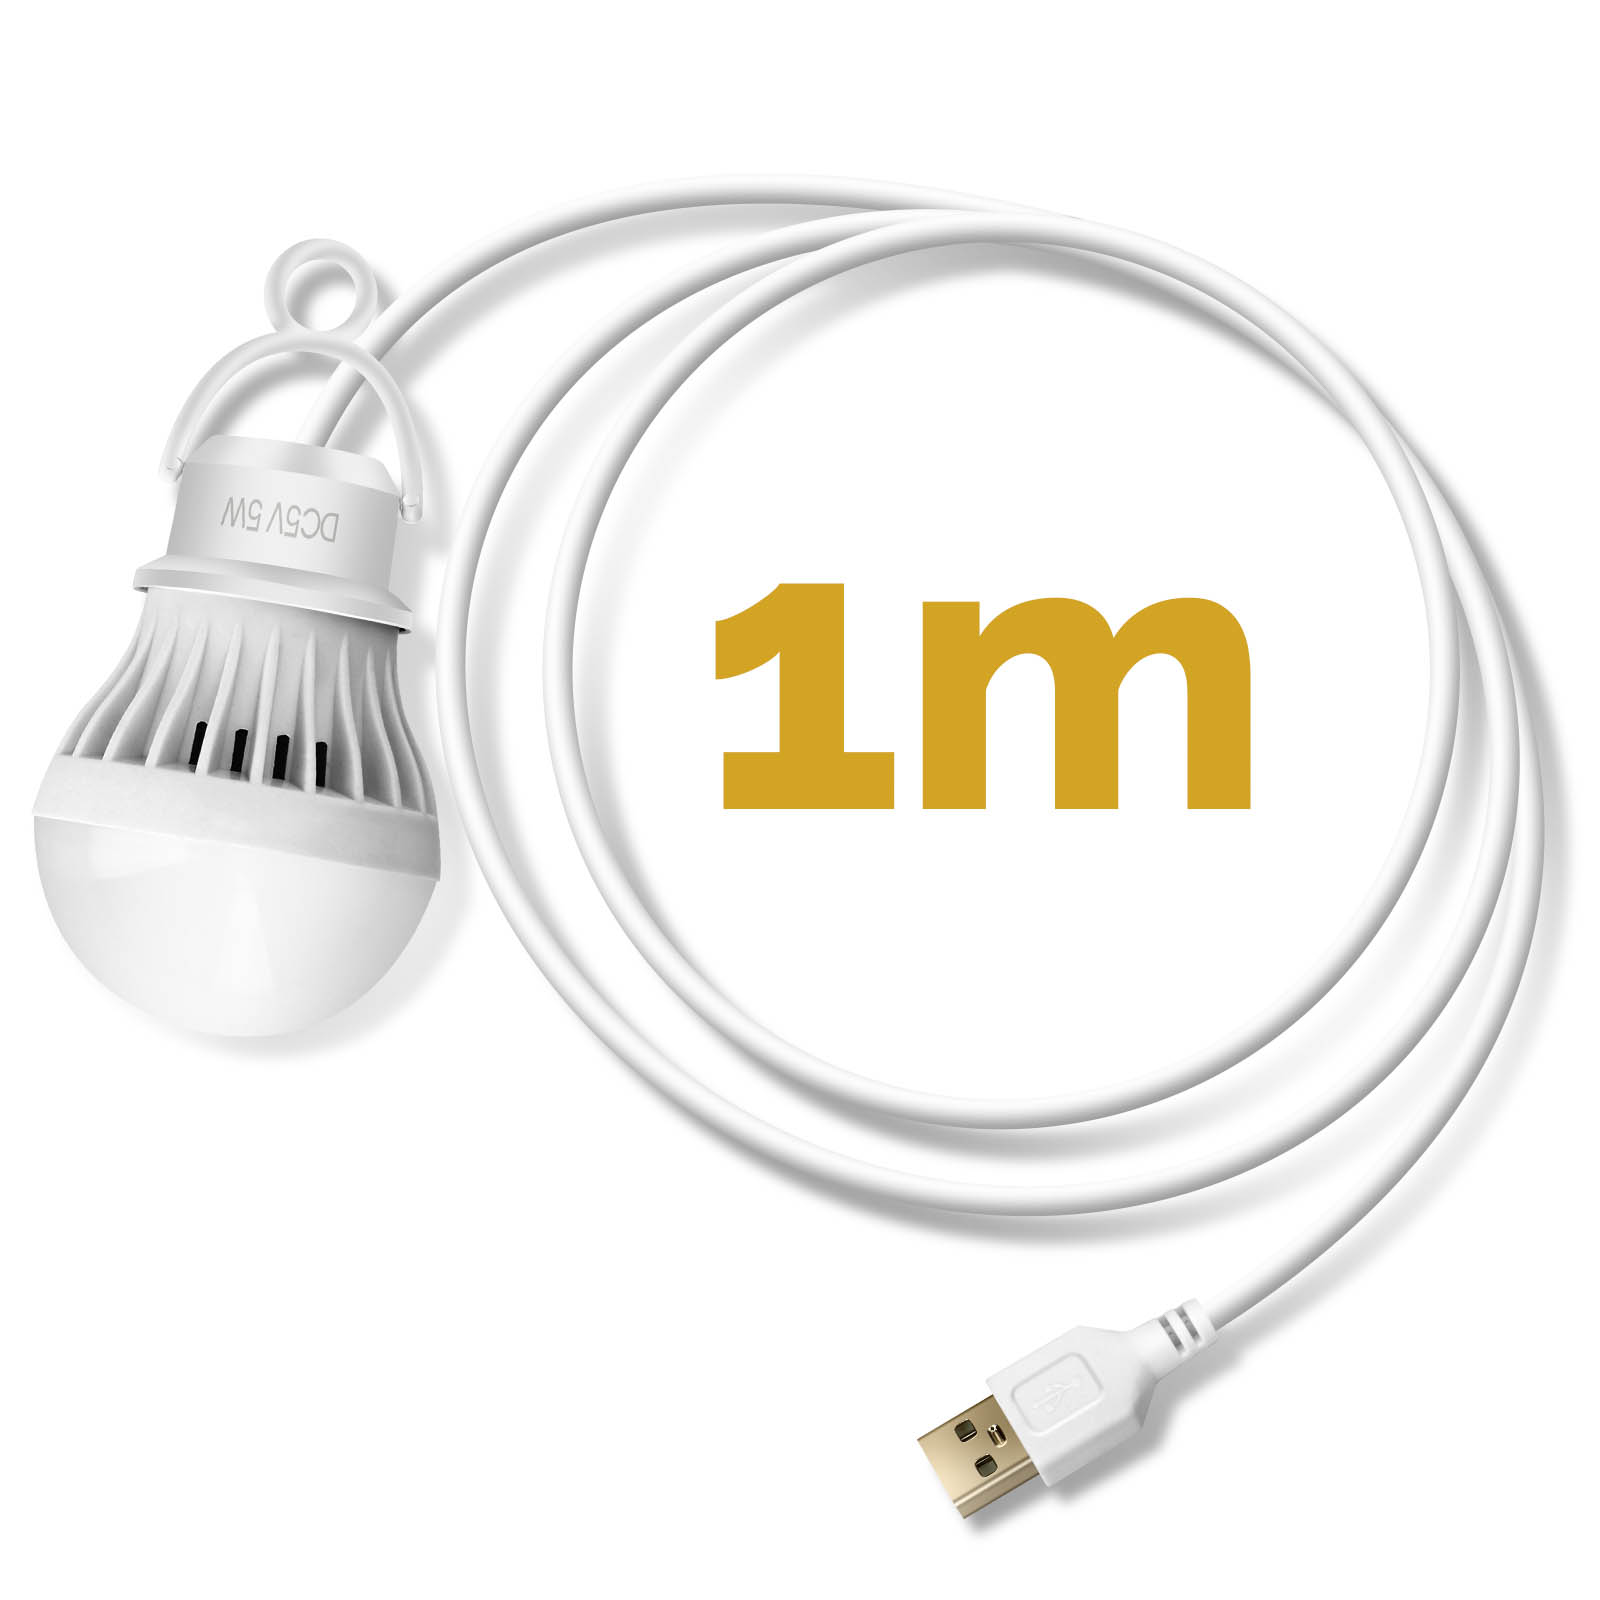 Ampoule LED USB 5W, 350 lumen avec Longueur 1m - Français